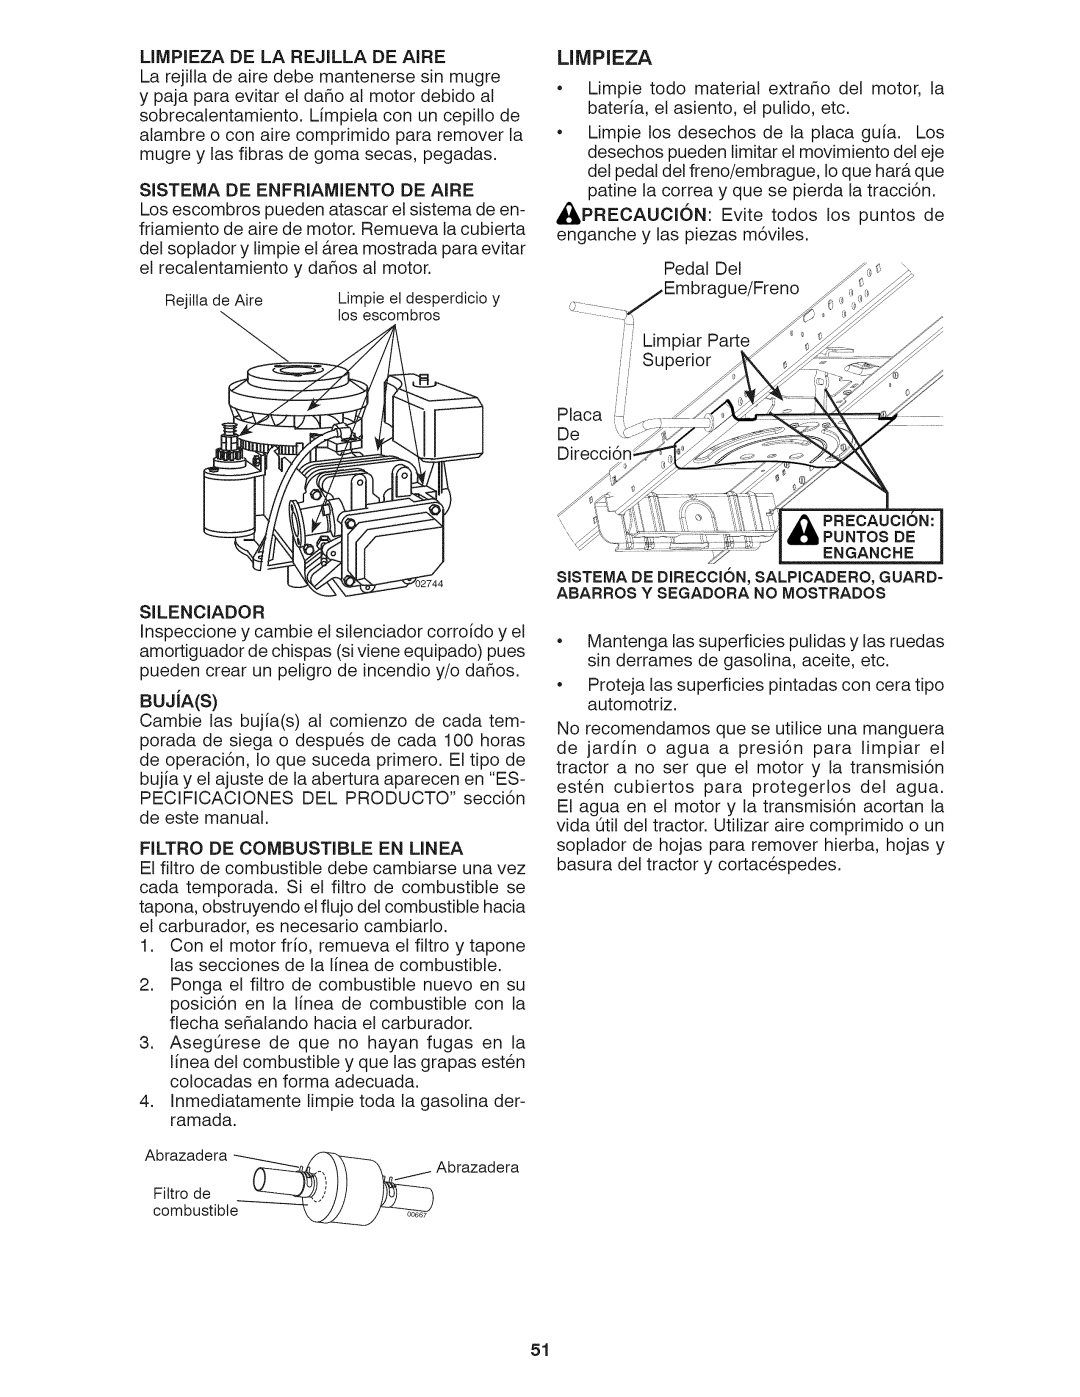 Craftsman 917.28035 owner manual Limpiezadela Rejilladeaire, BUJiAS, Silenciador, Filtro De Combustible En Linea 